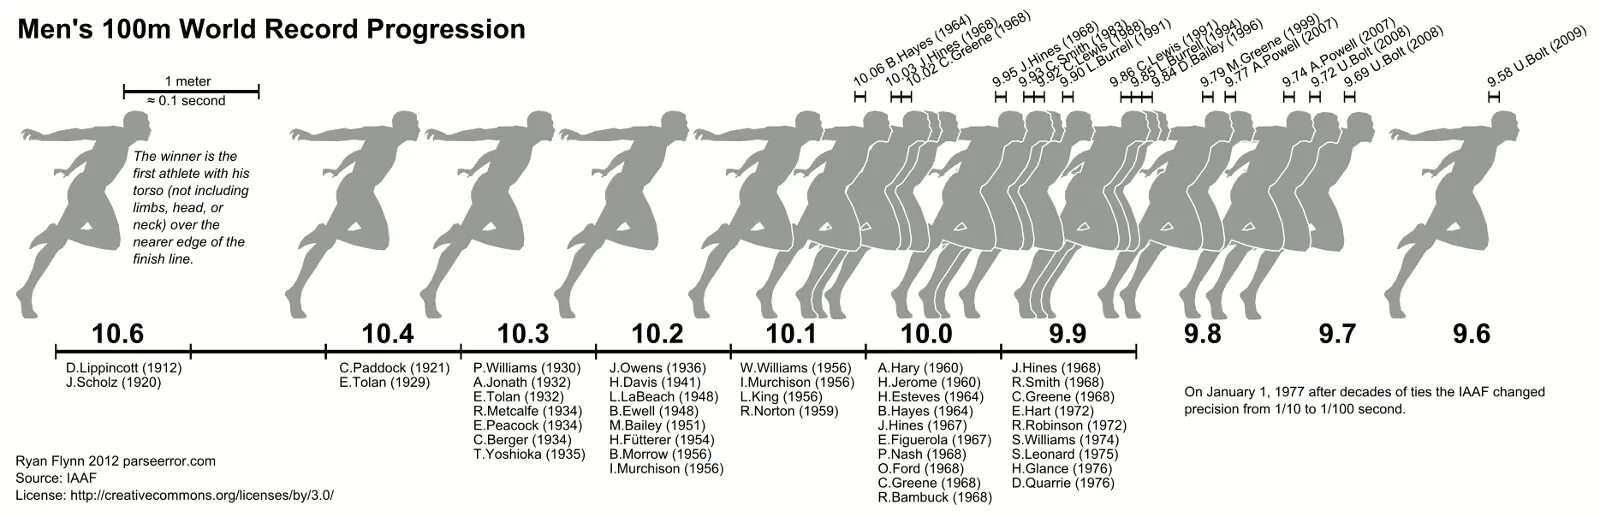 Рекорд 1 км бег мужчины. Бег 100 метров рекорд. Бег на 100 метров время. Бег на СТО метров рекорд скорость. Хронология Мировых рекордов в беге на 10 000 метров.